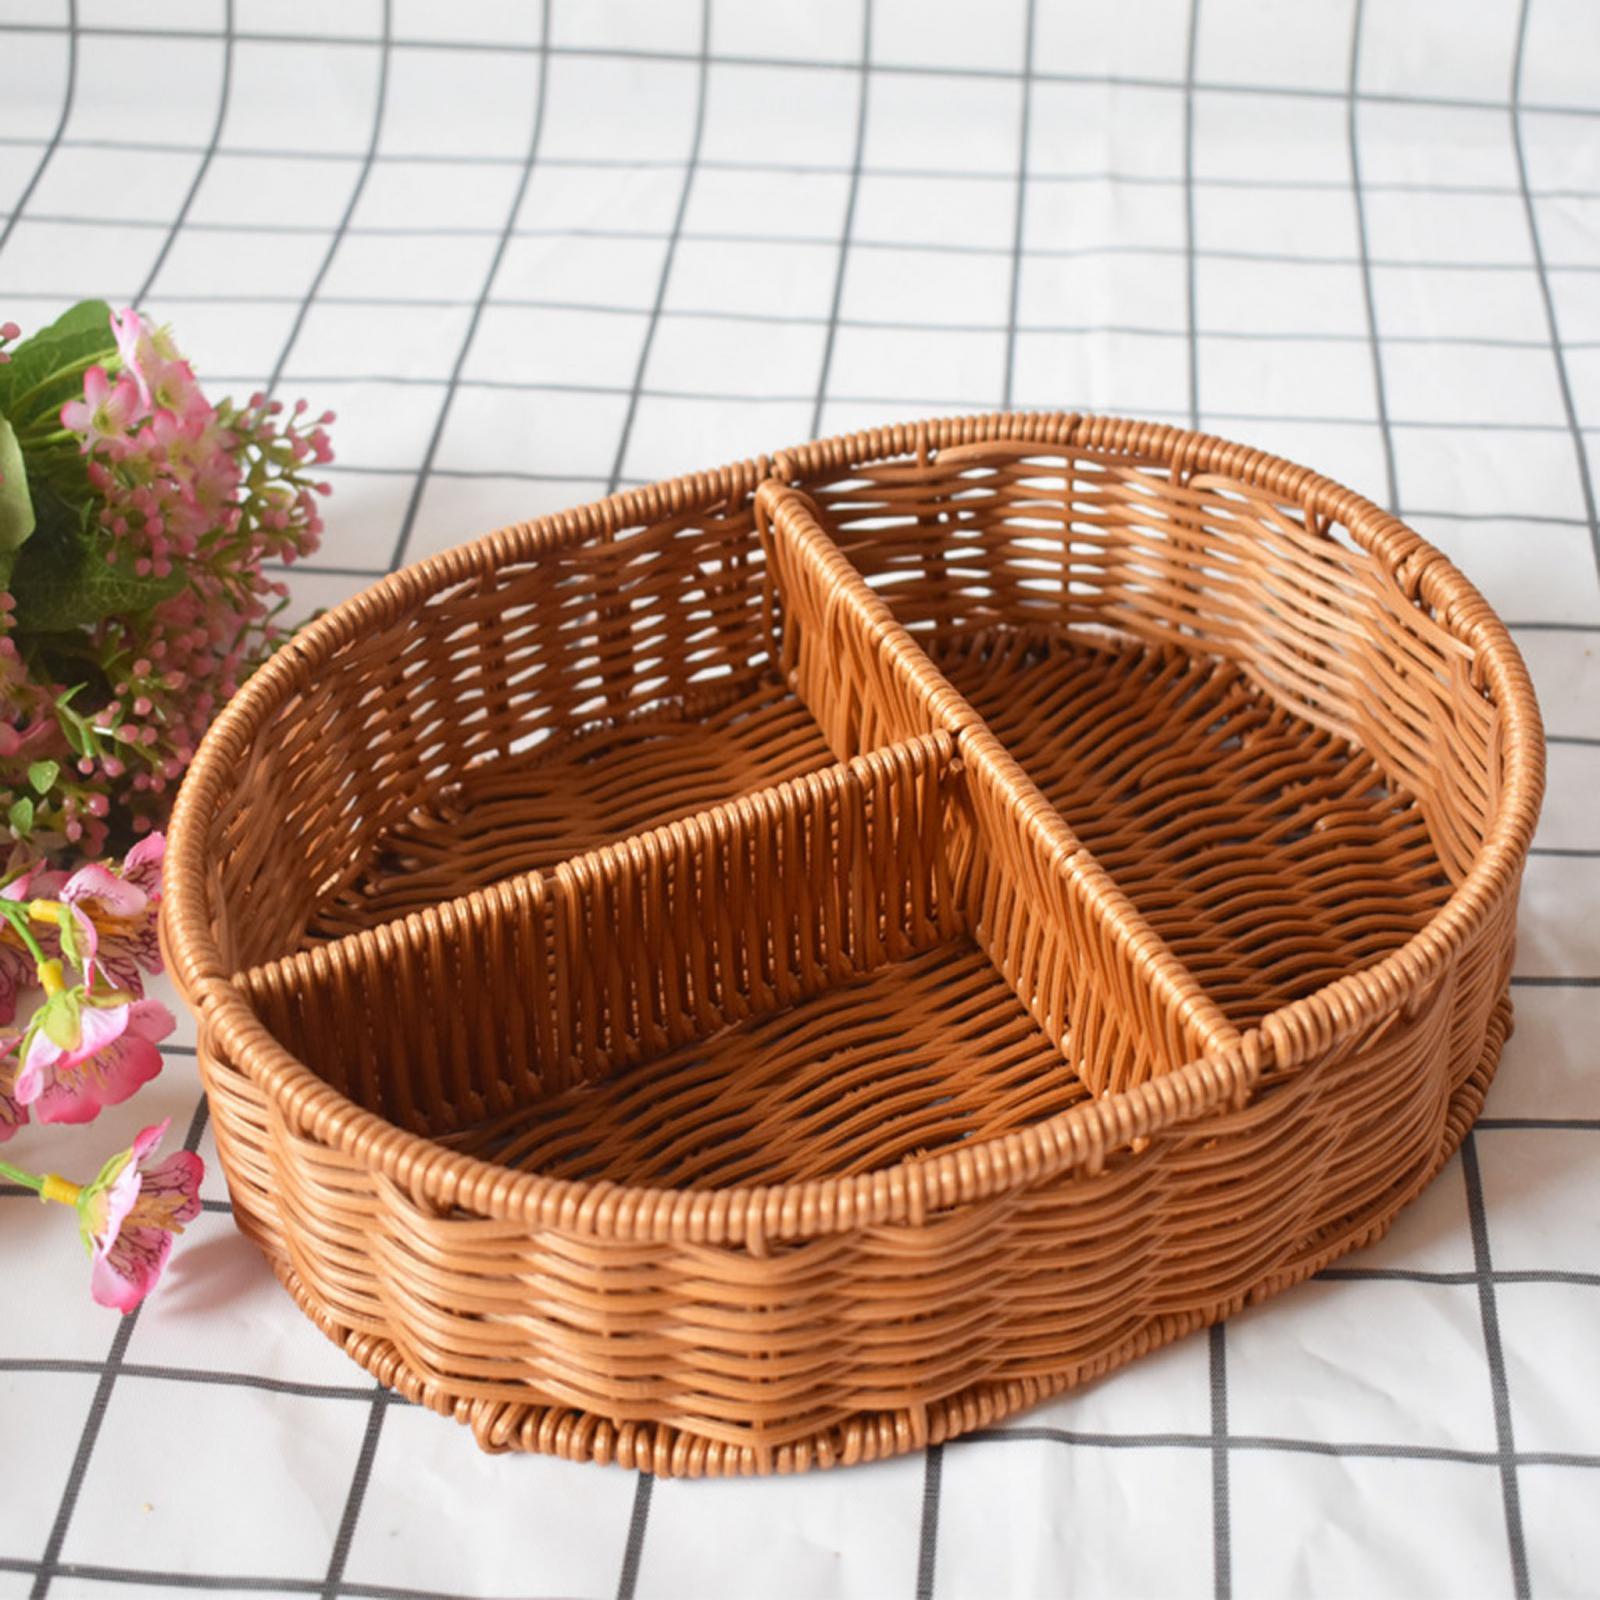 Imitation Rattan Bread Basket Food Serving Basket for Picnics Dining Kitchen